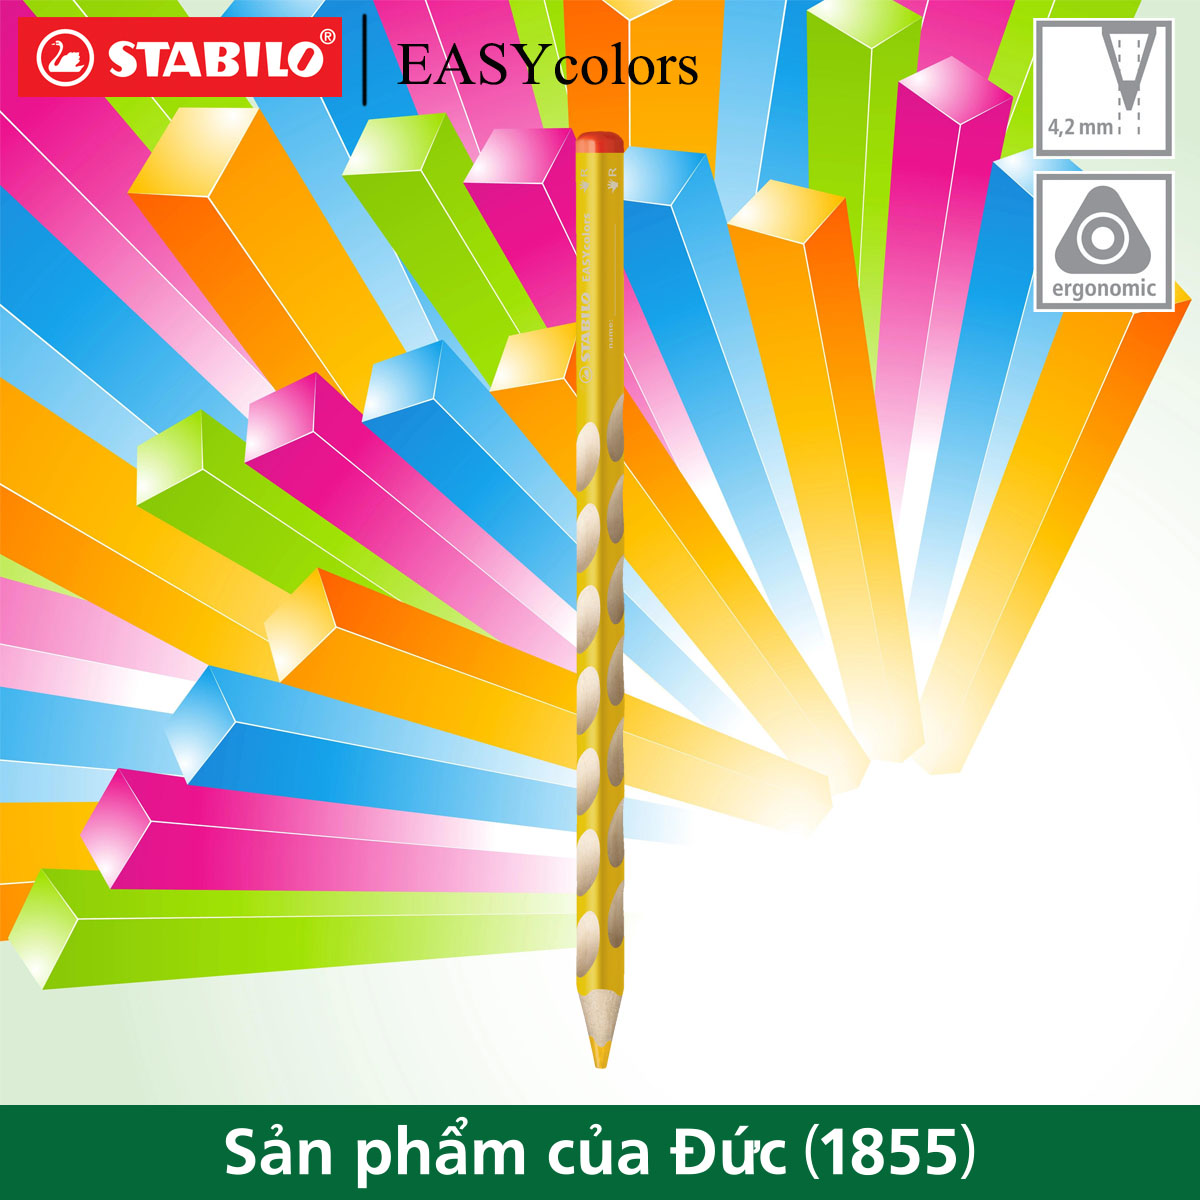 Bút chì màu thuận tay phải STABILO EASYcolors (CLE33R)